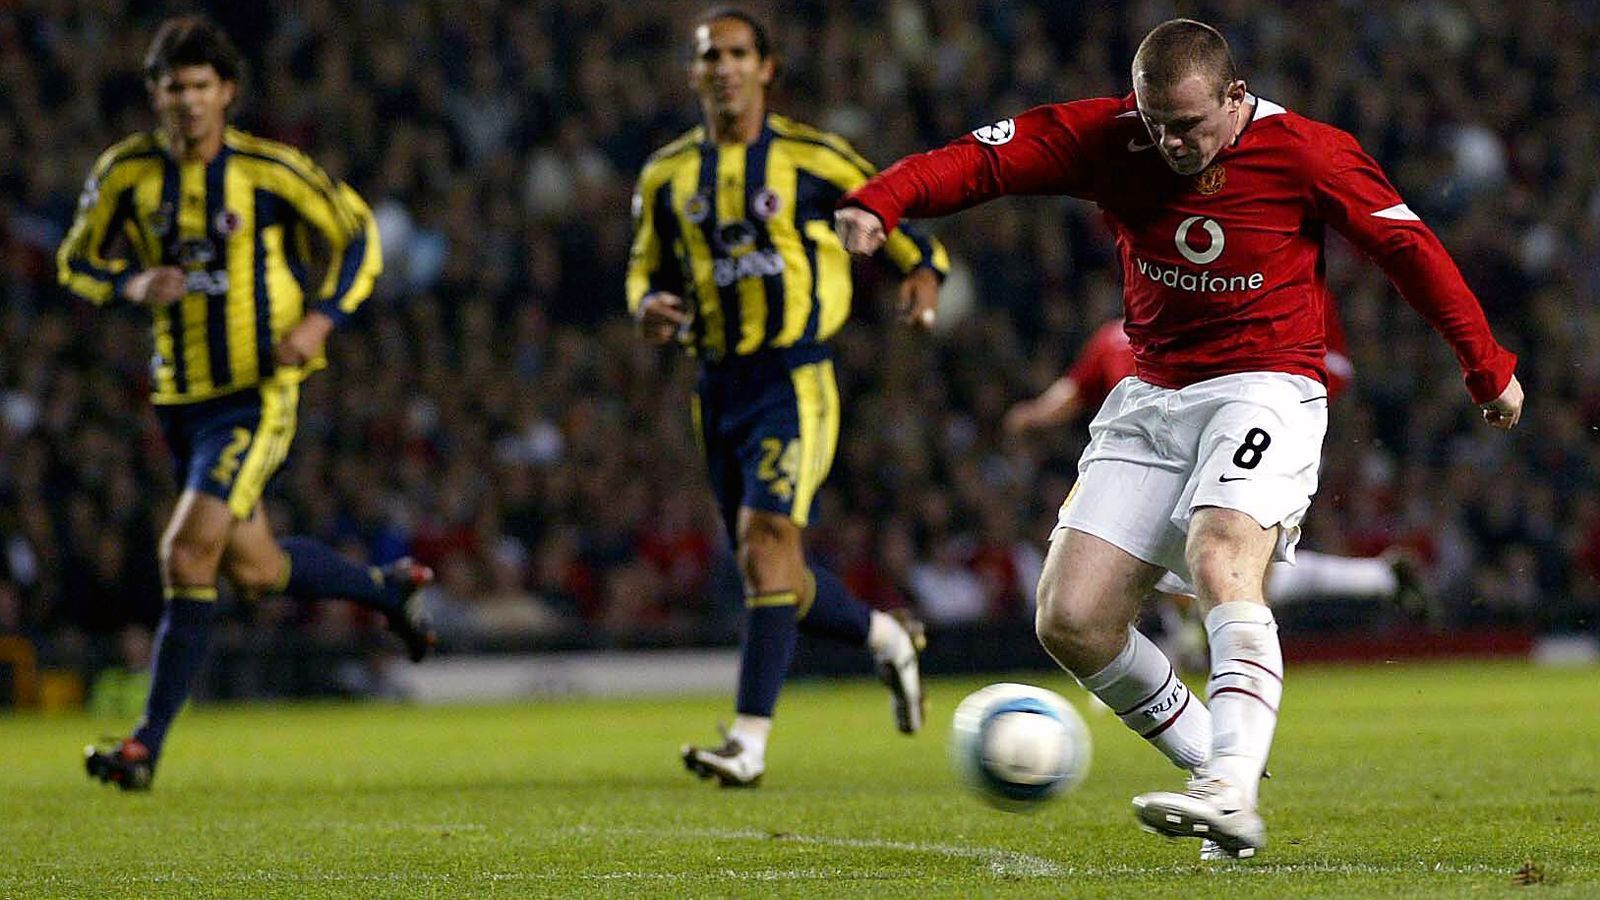 
                <strong>Platz 4 - Wayne Rooney (Manchester United)</strong><br>
                Alter bei seinem Dreierpack: 18,9 JahreSpiel gegen: Fenerbahce Istanbul (28. September 2004)
              